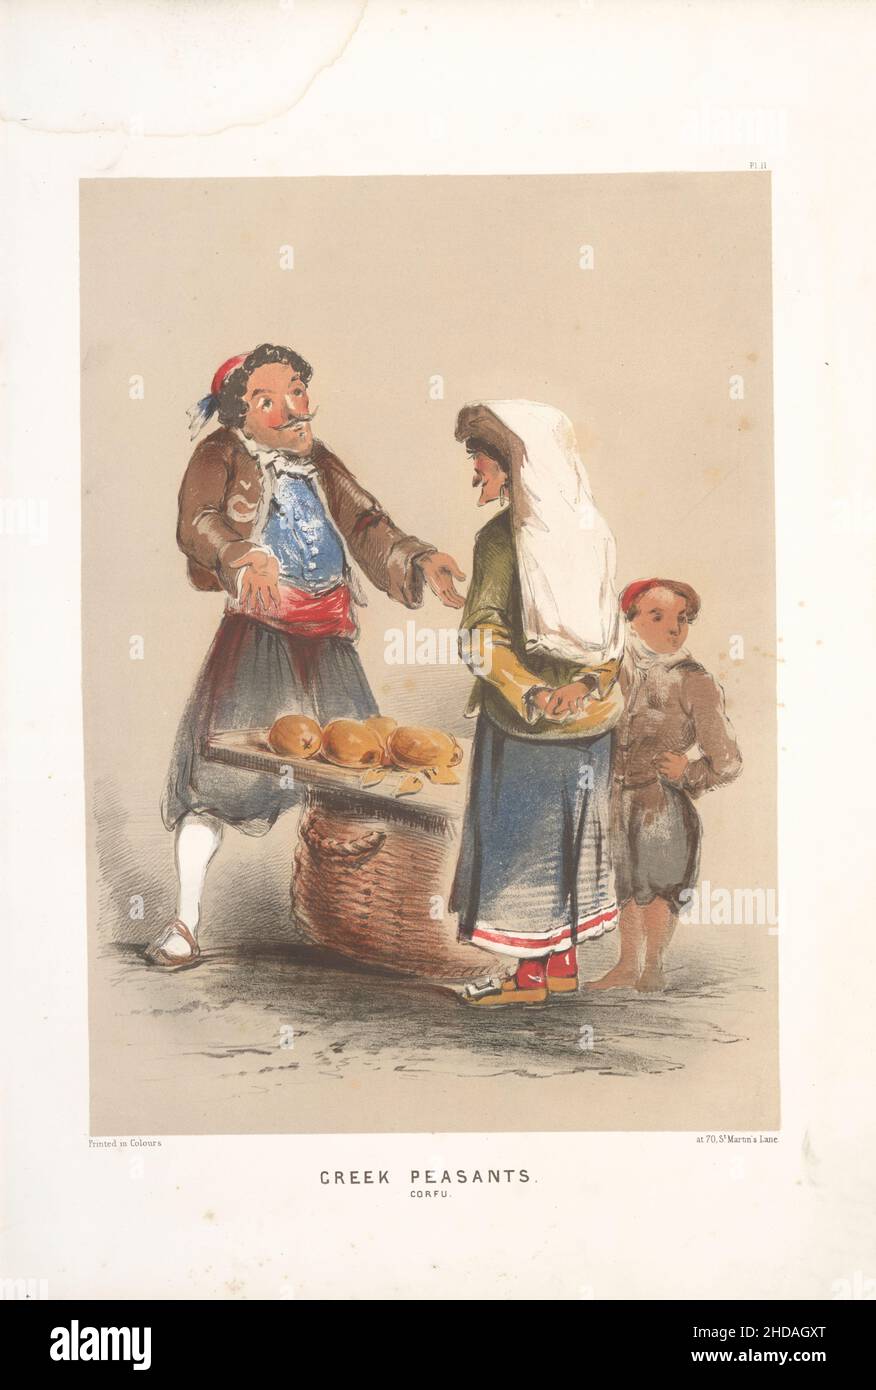 Vintage-Farblithographie des Osmanischen Reiches: Griechische Bauern; Korfu 1854, von Forbes Mac Bean (Künstler) und Justin Sutcliffe (Lithograph) Stockfoto